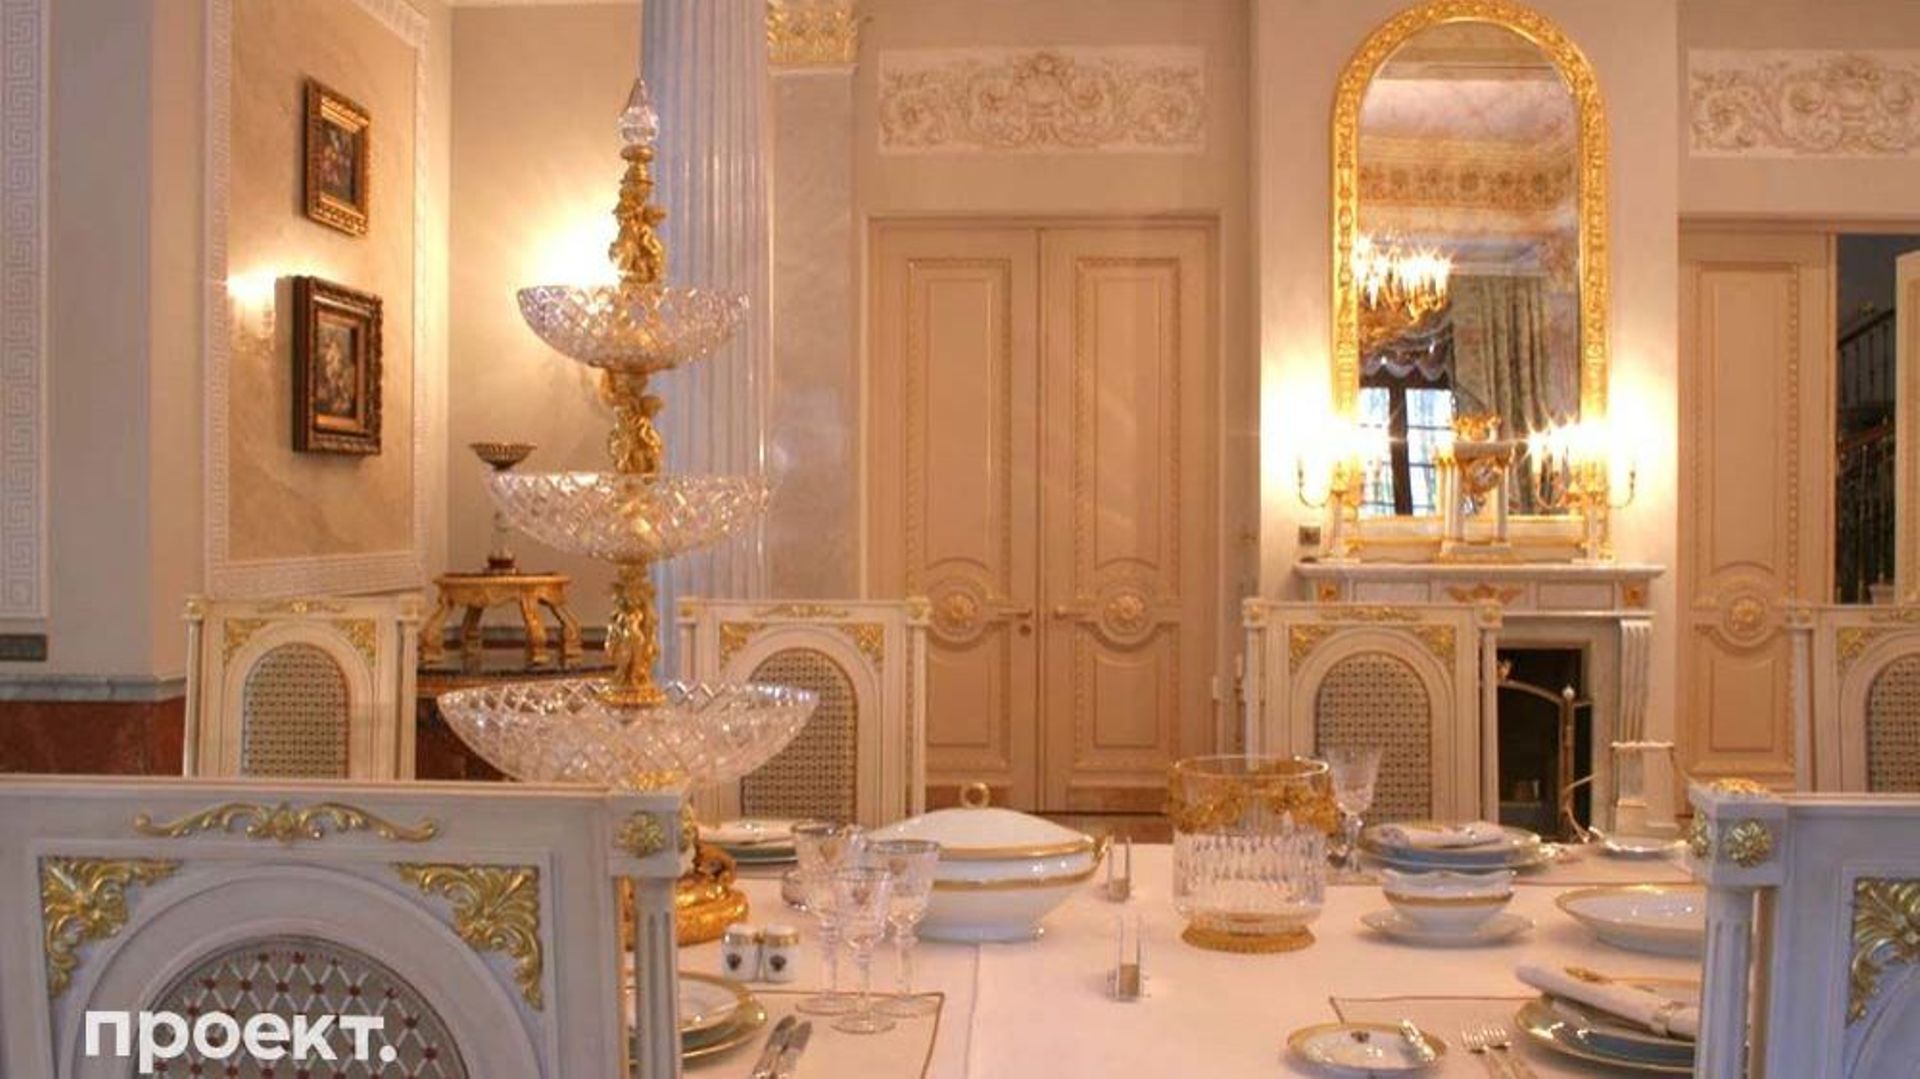 Une salle à manger de Poutine